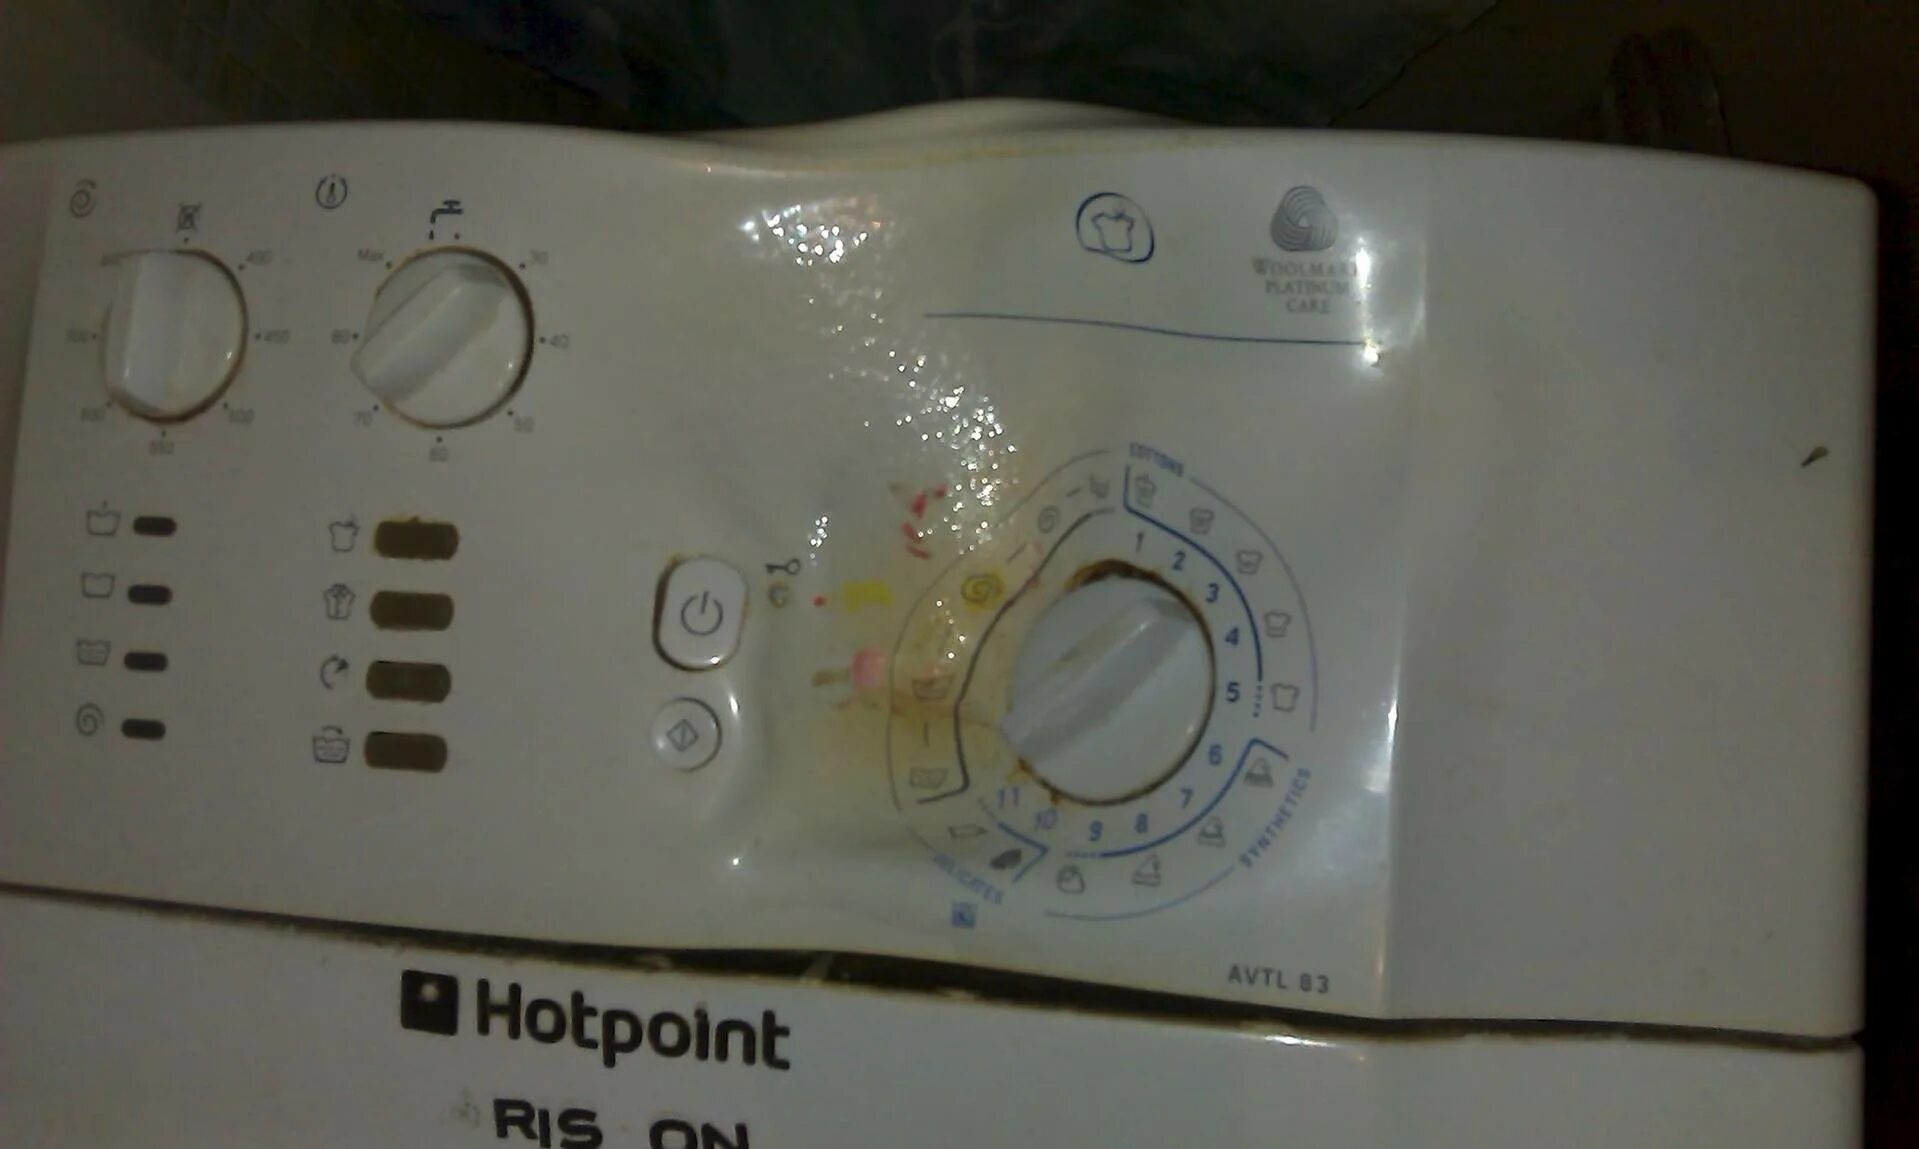 Remont-knopok стиральной машины. Сломалась кнопка стиральной машины. Кнопки на стиральной машине. Залипла кнопка на стиральной машине. Кнопки стиральной машины канди